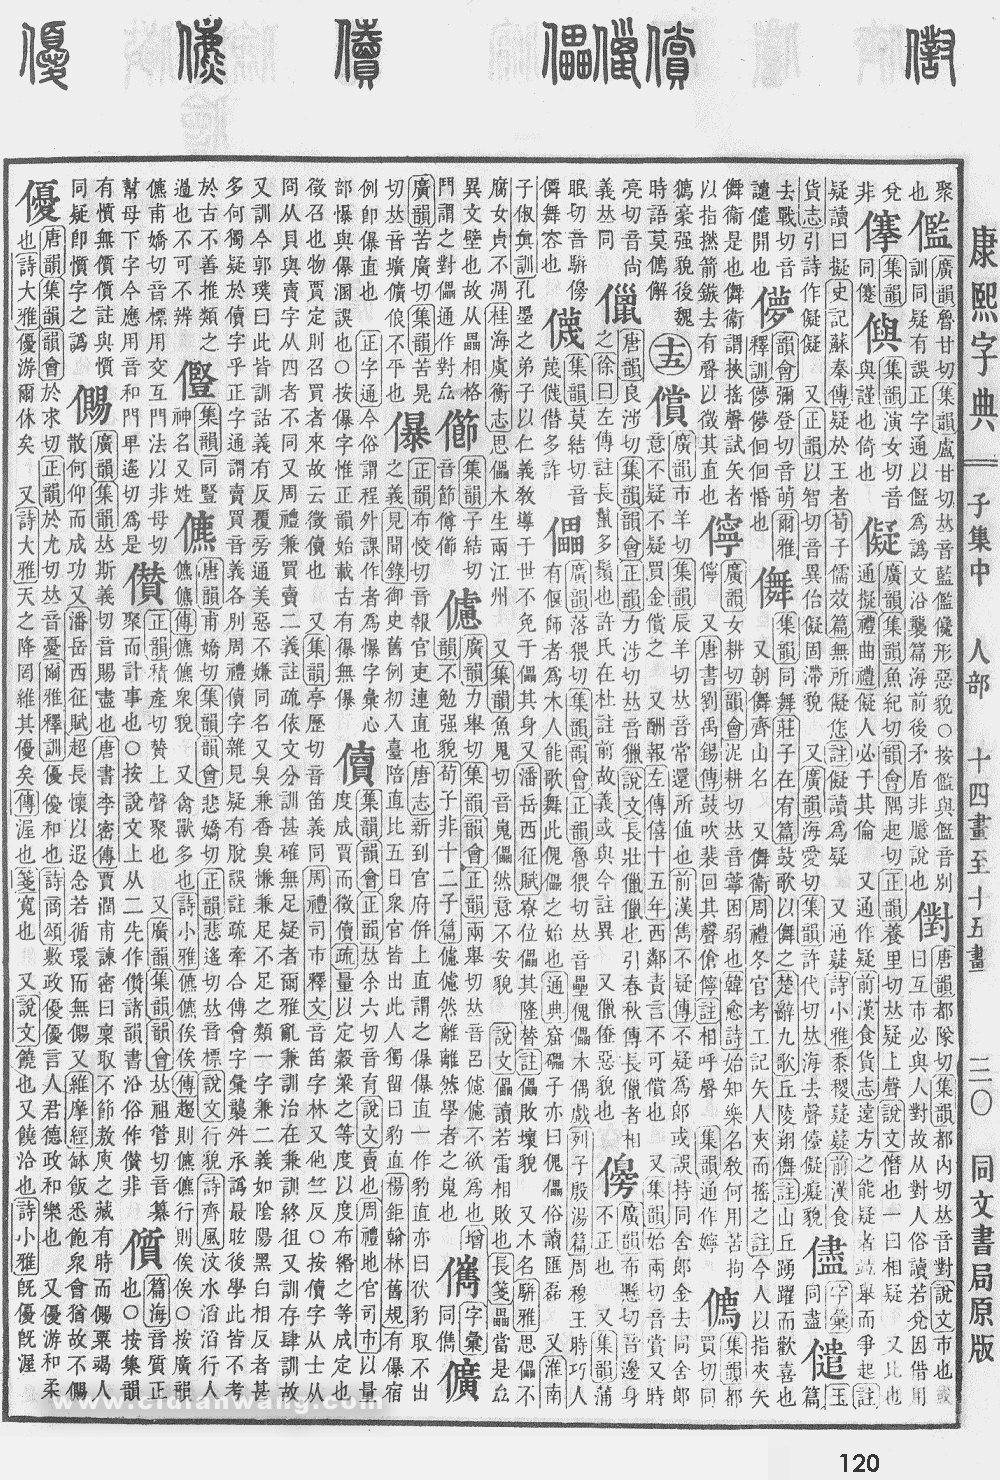 康熙字典掃描版第120頁